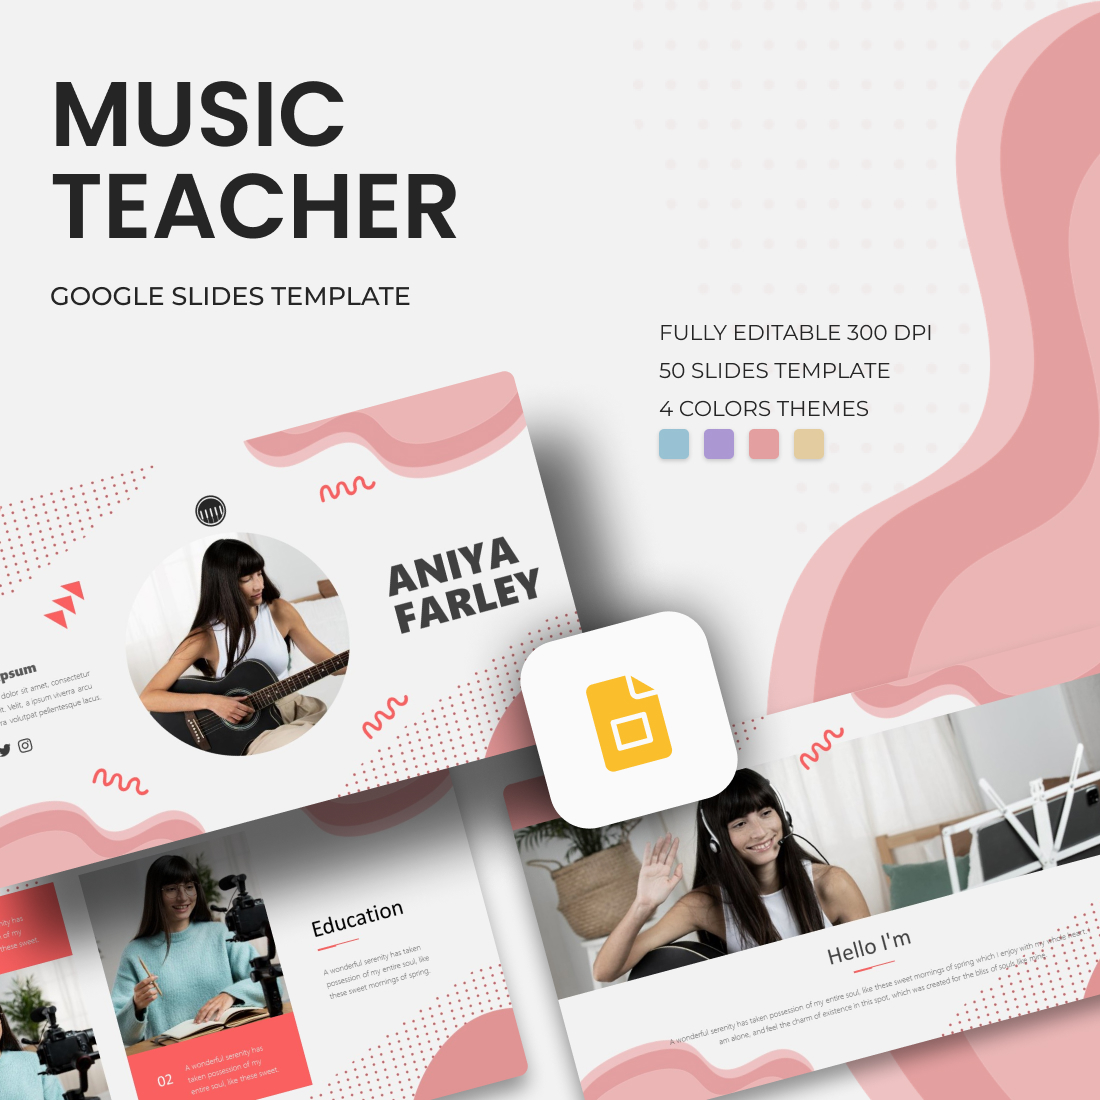 Music Teacher Google Slides Theme cover image.